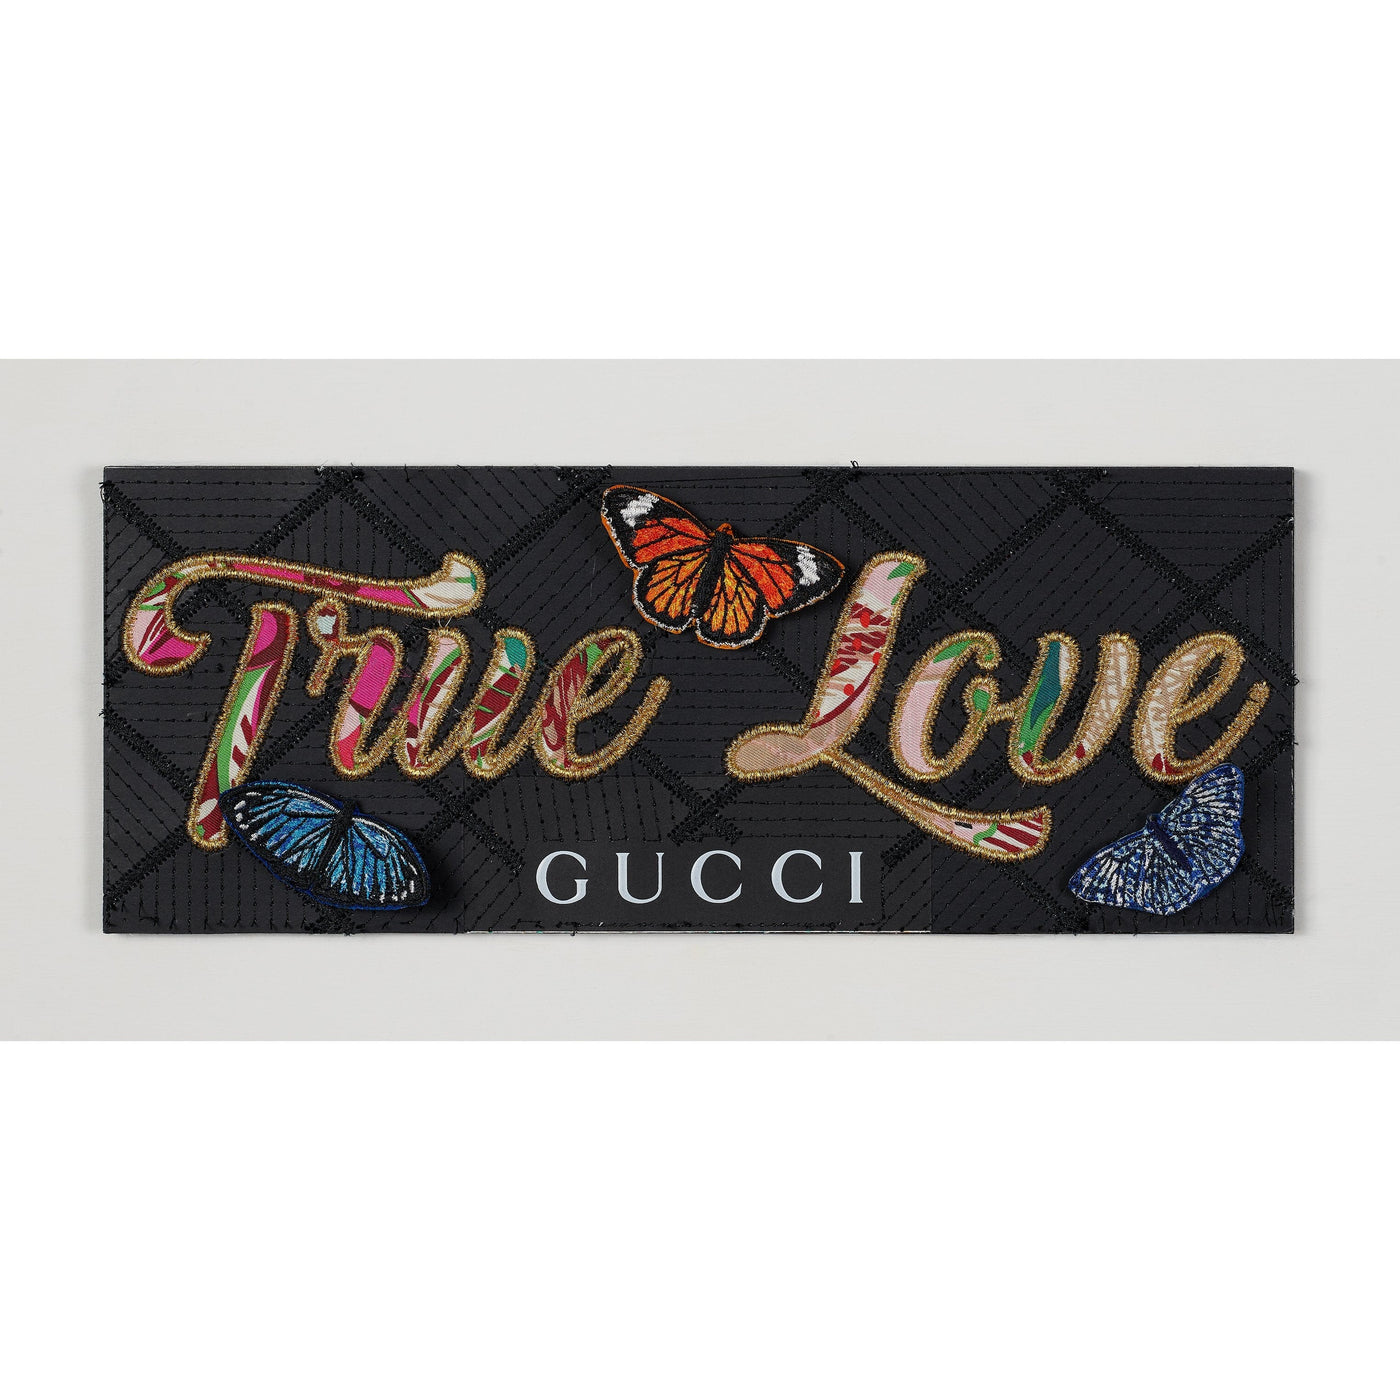 Gucci True Love Artwork Stephen WIlson 